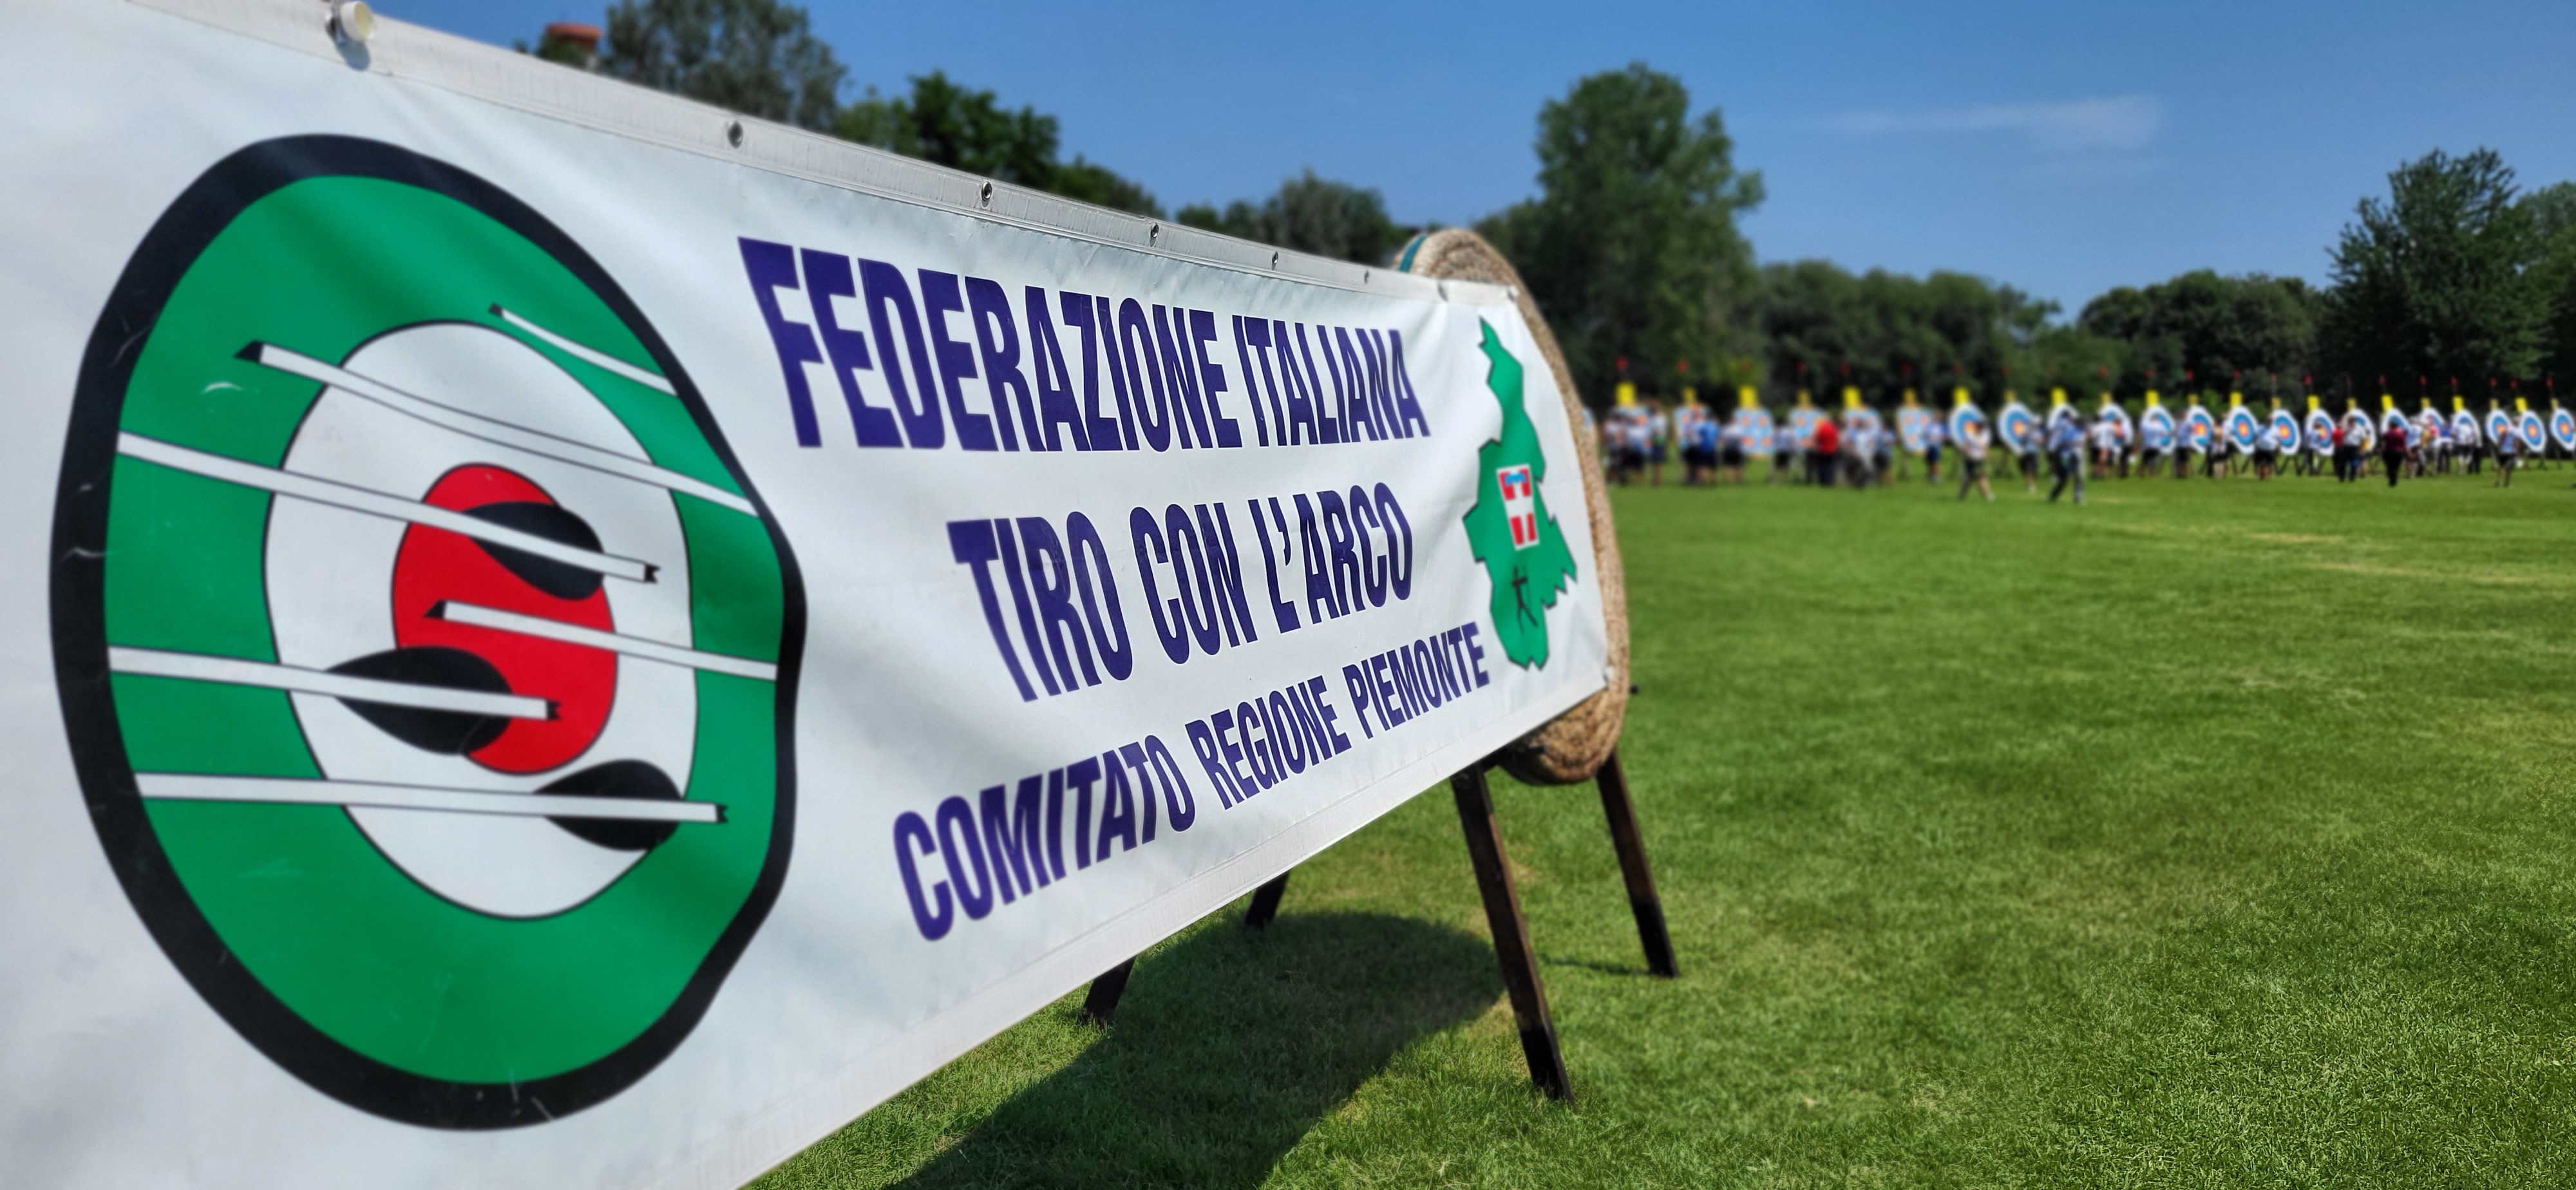 Piemonte: Campionato Regionale Targa